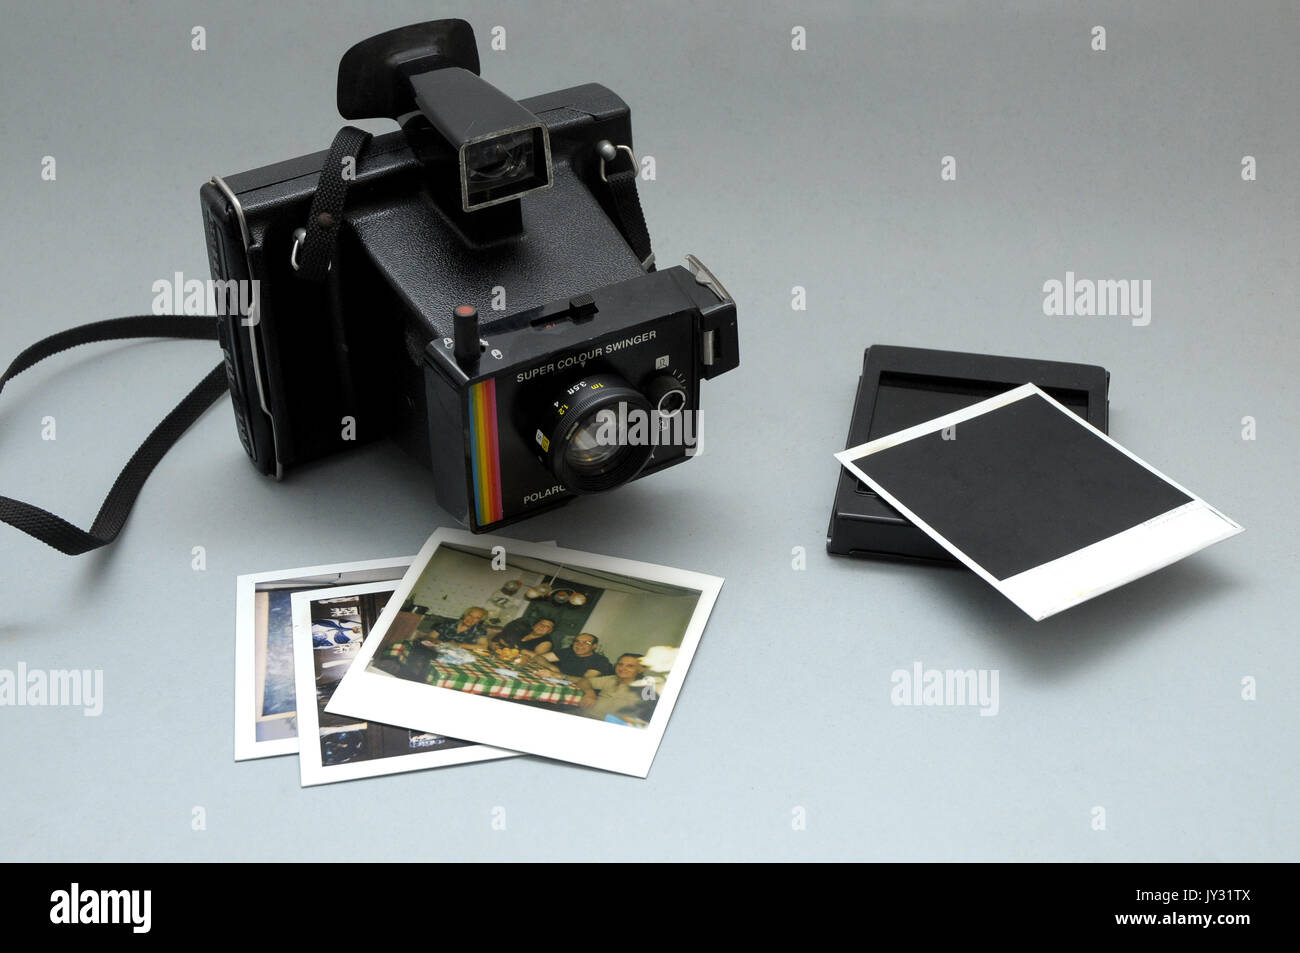 Telecamera Polaroid, modello Super Color Swinger, vintage in ottime  condizioni e foto polaroid Foto stock - Alamy